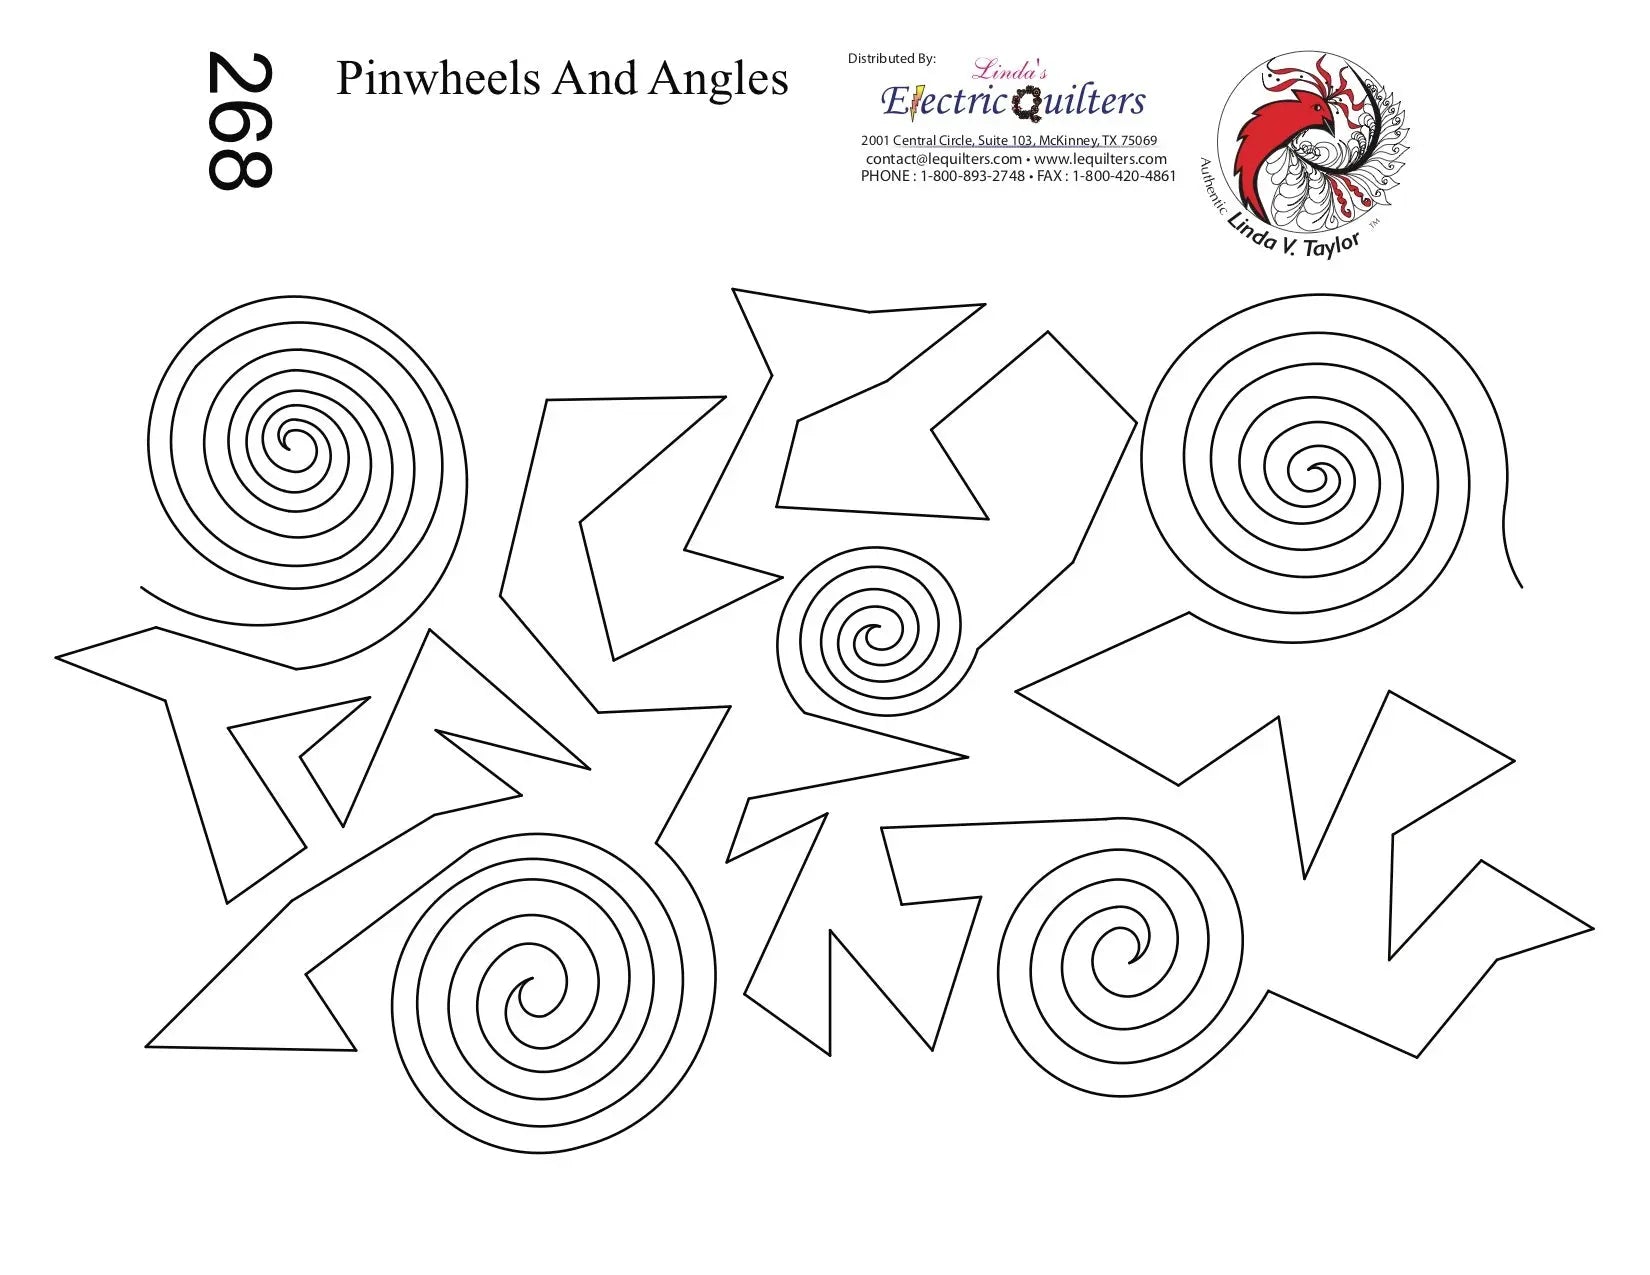 268 Pinwheels And Angles Pantograph by Linda V. Taylor